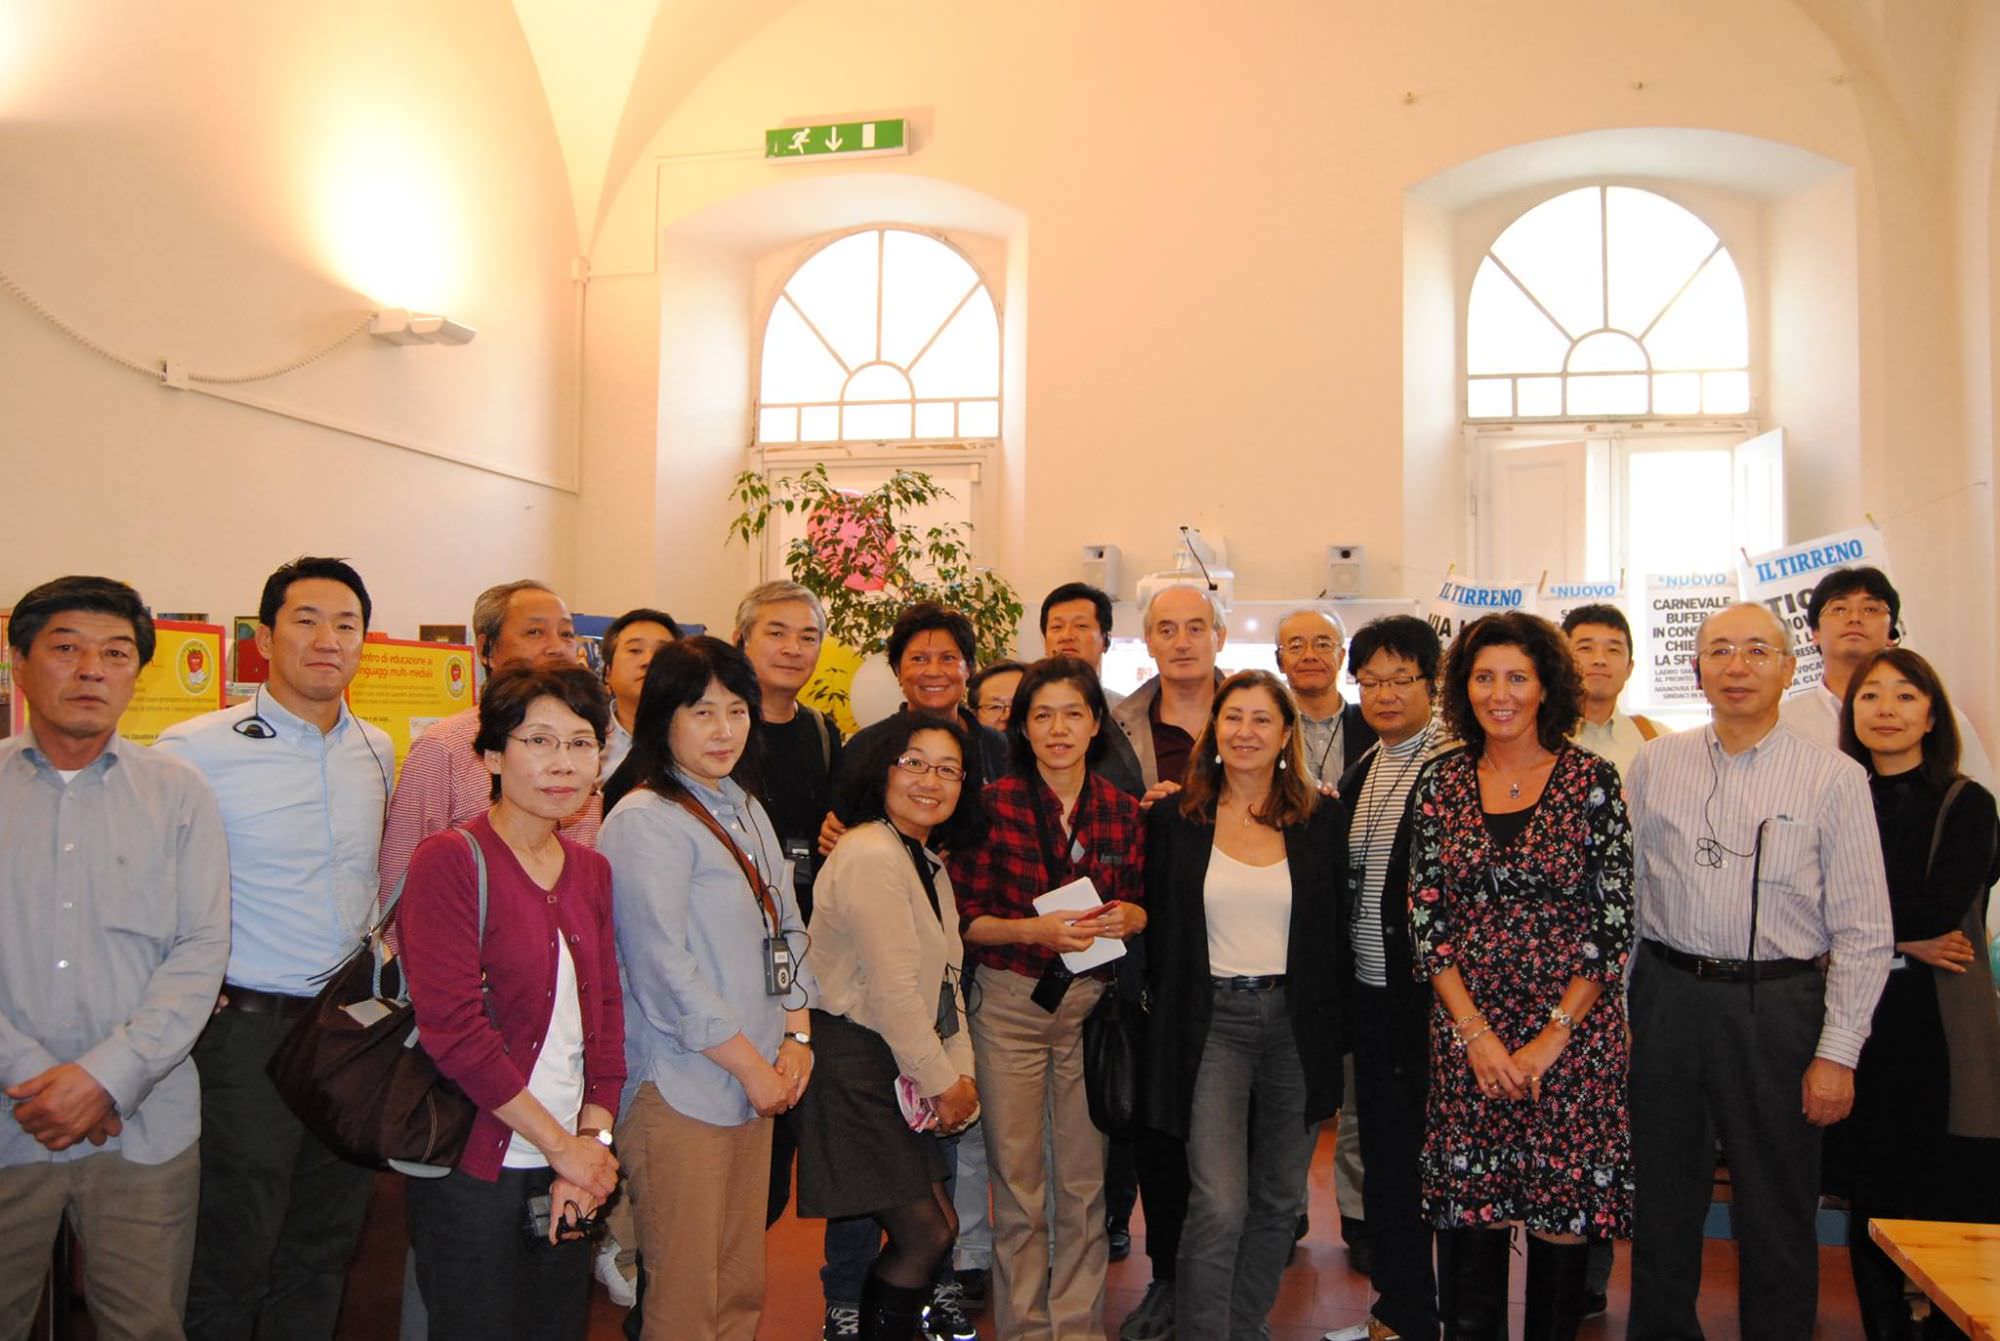 Una delegazione giapponese in visita a Viareggio per studiare “A scuola con gusto”